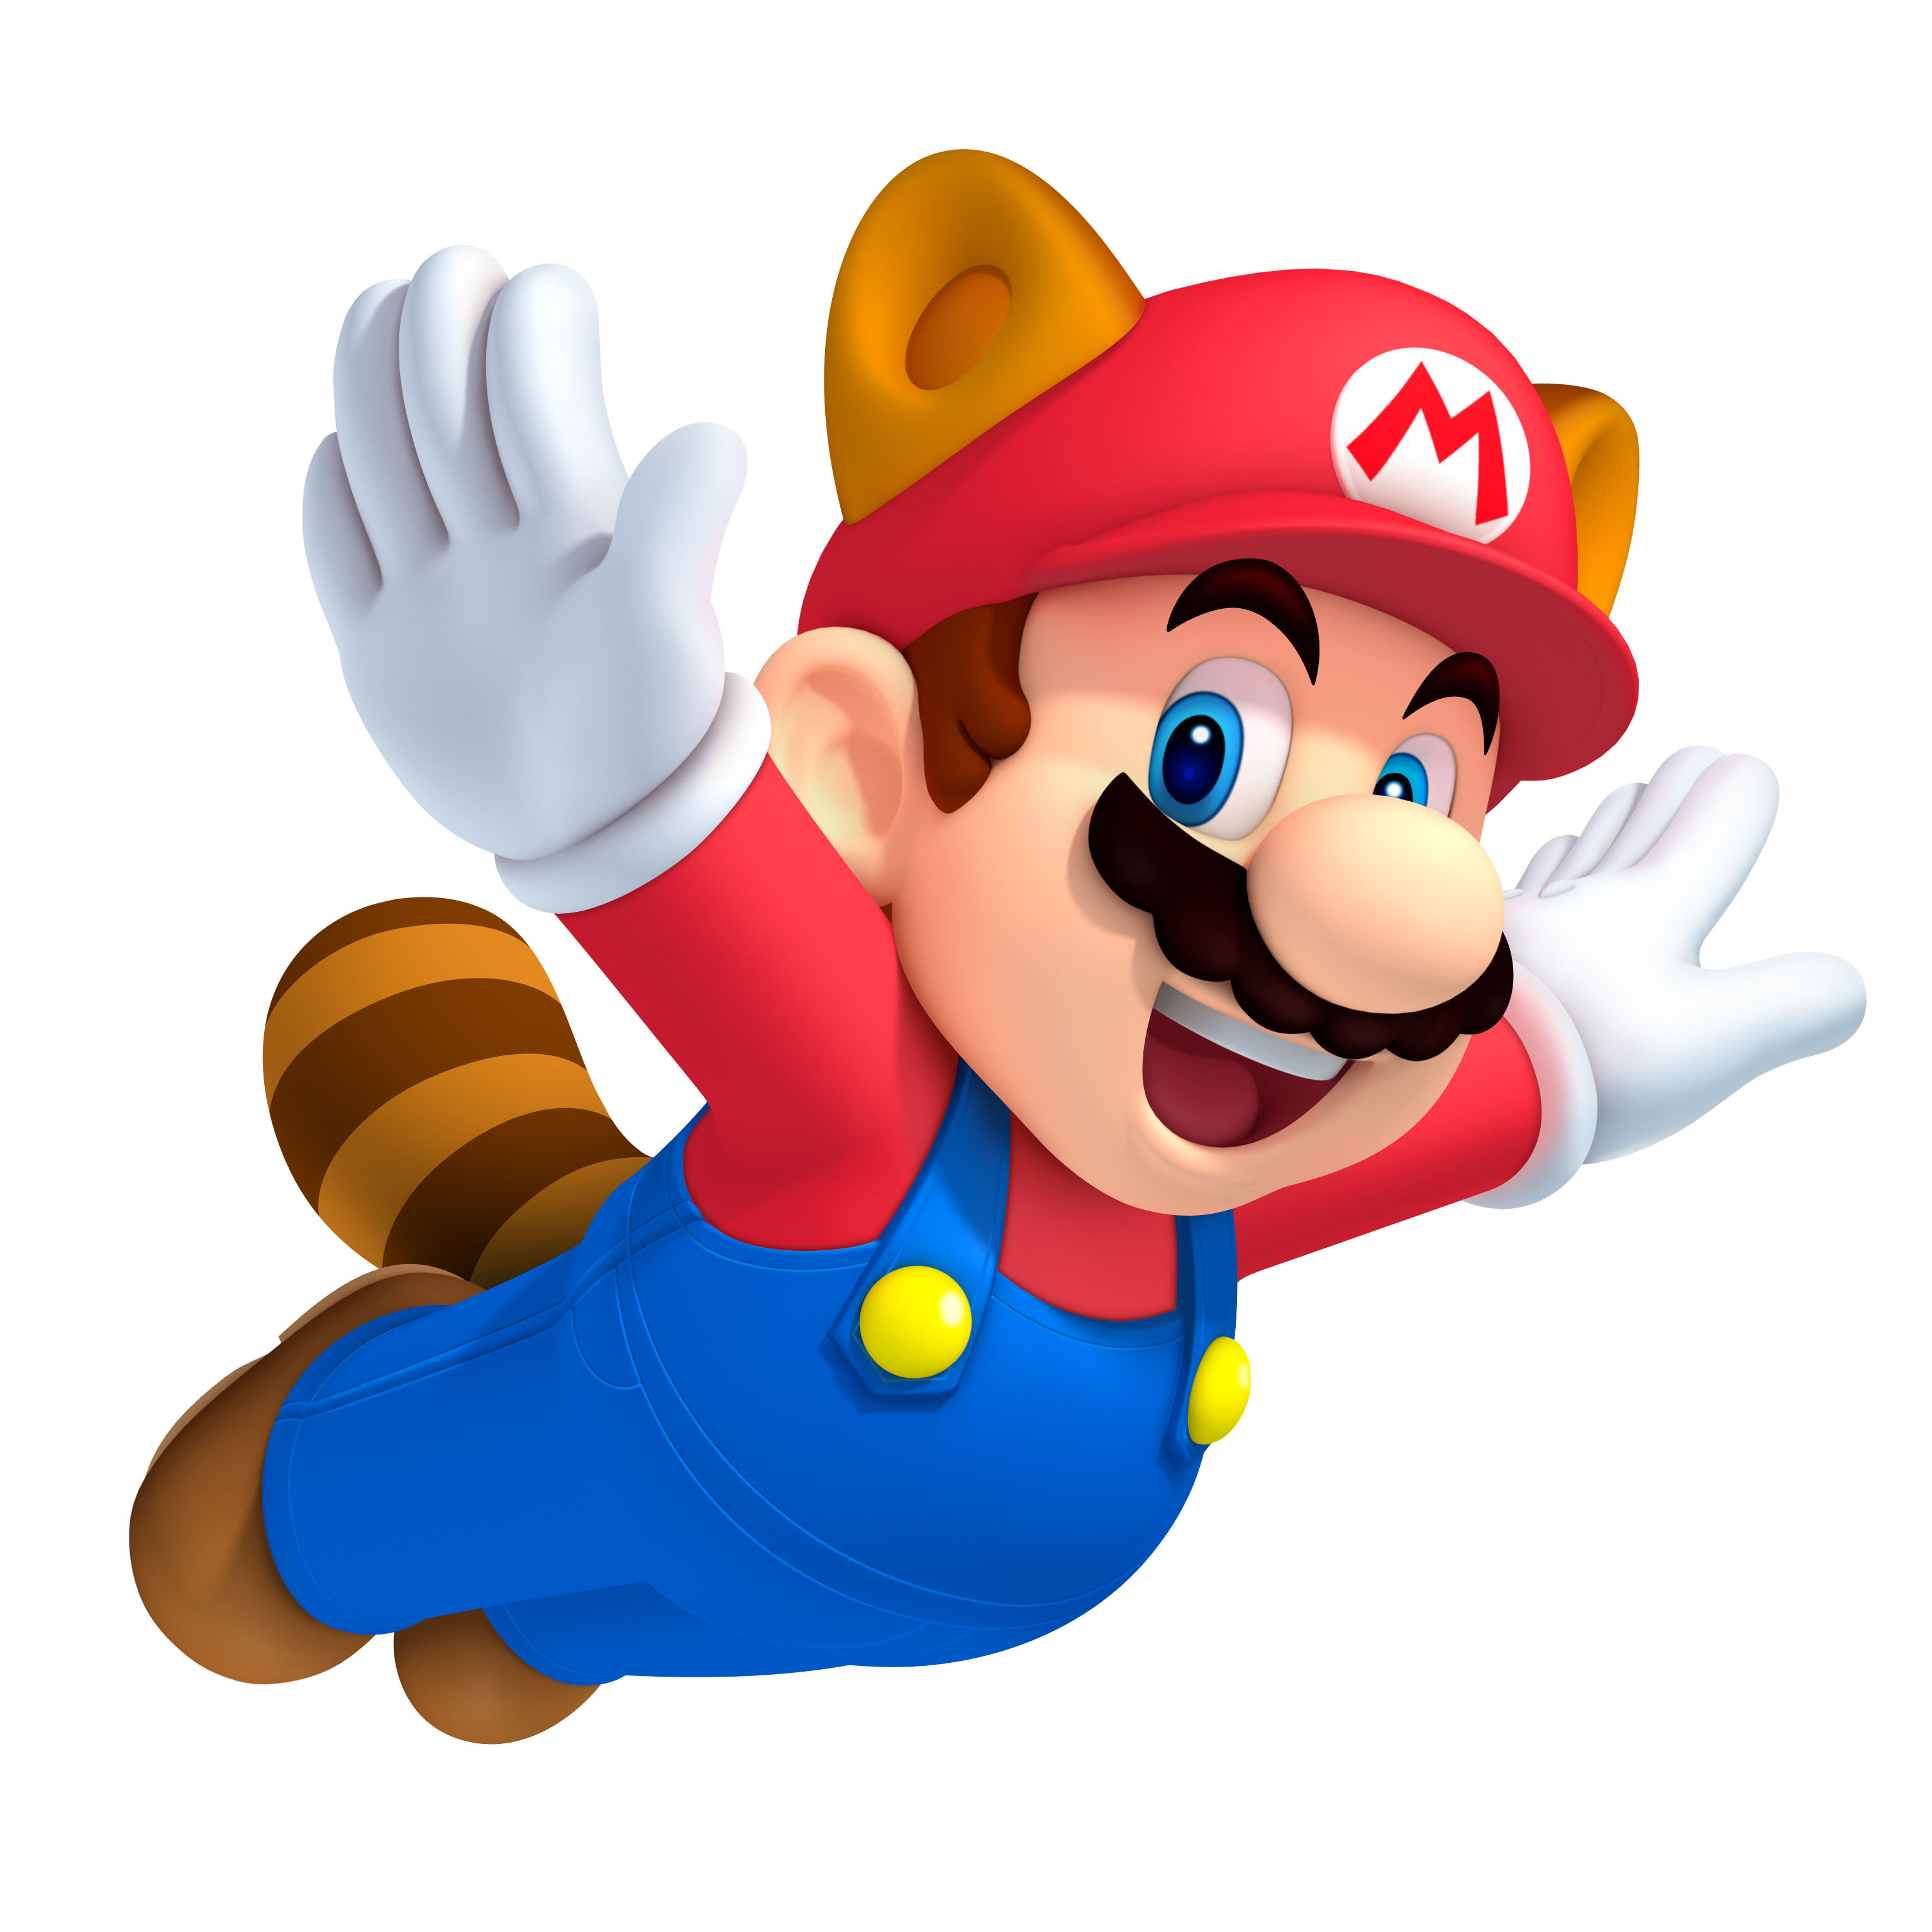 Mario brothers. Супер Марио. Супер Марио БРОС. Супер Марио БРОС Марио. Супер Марио БРОС 2.